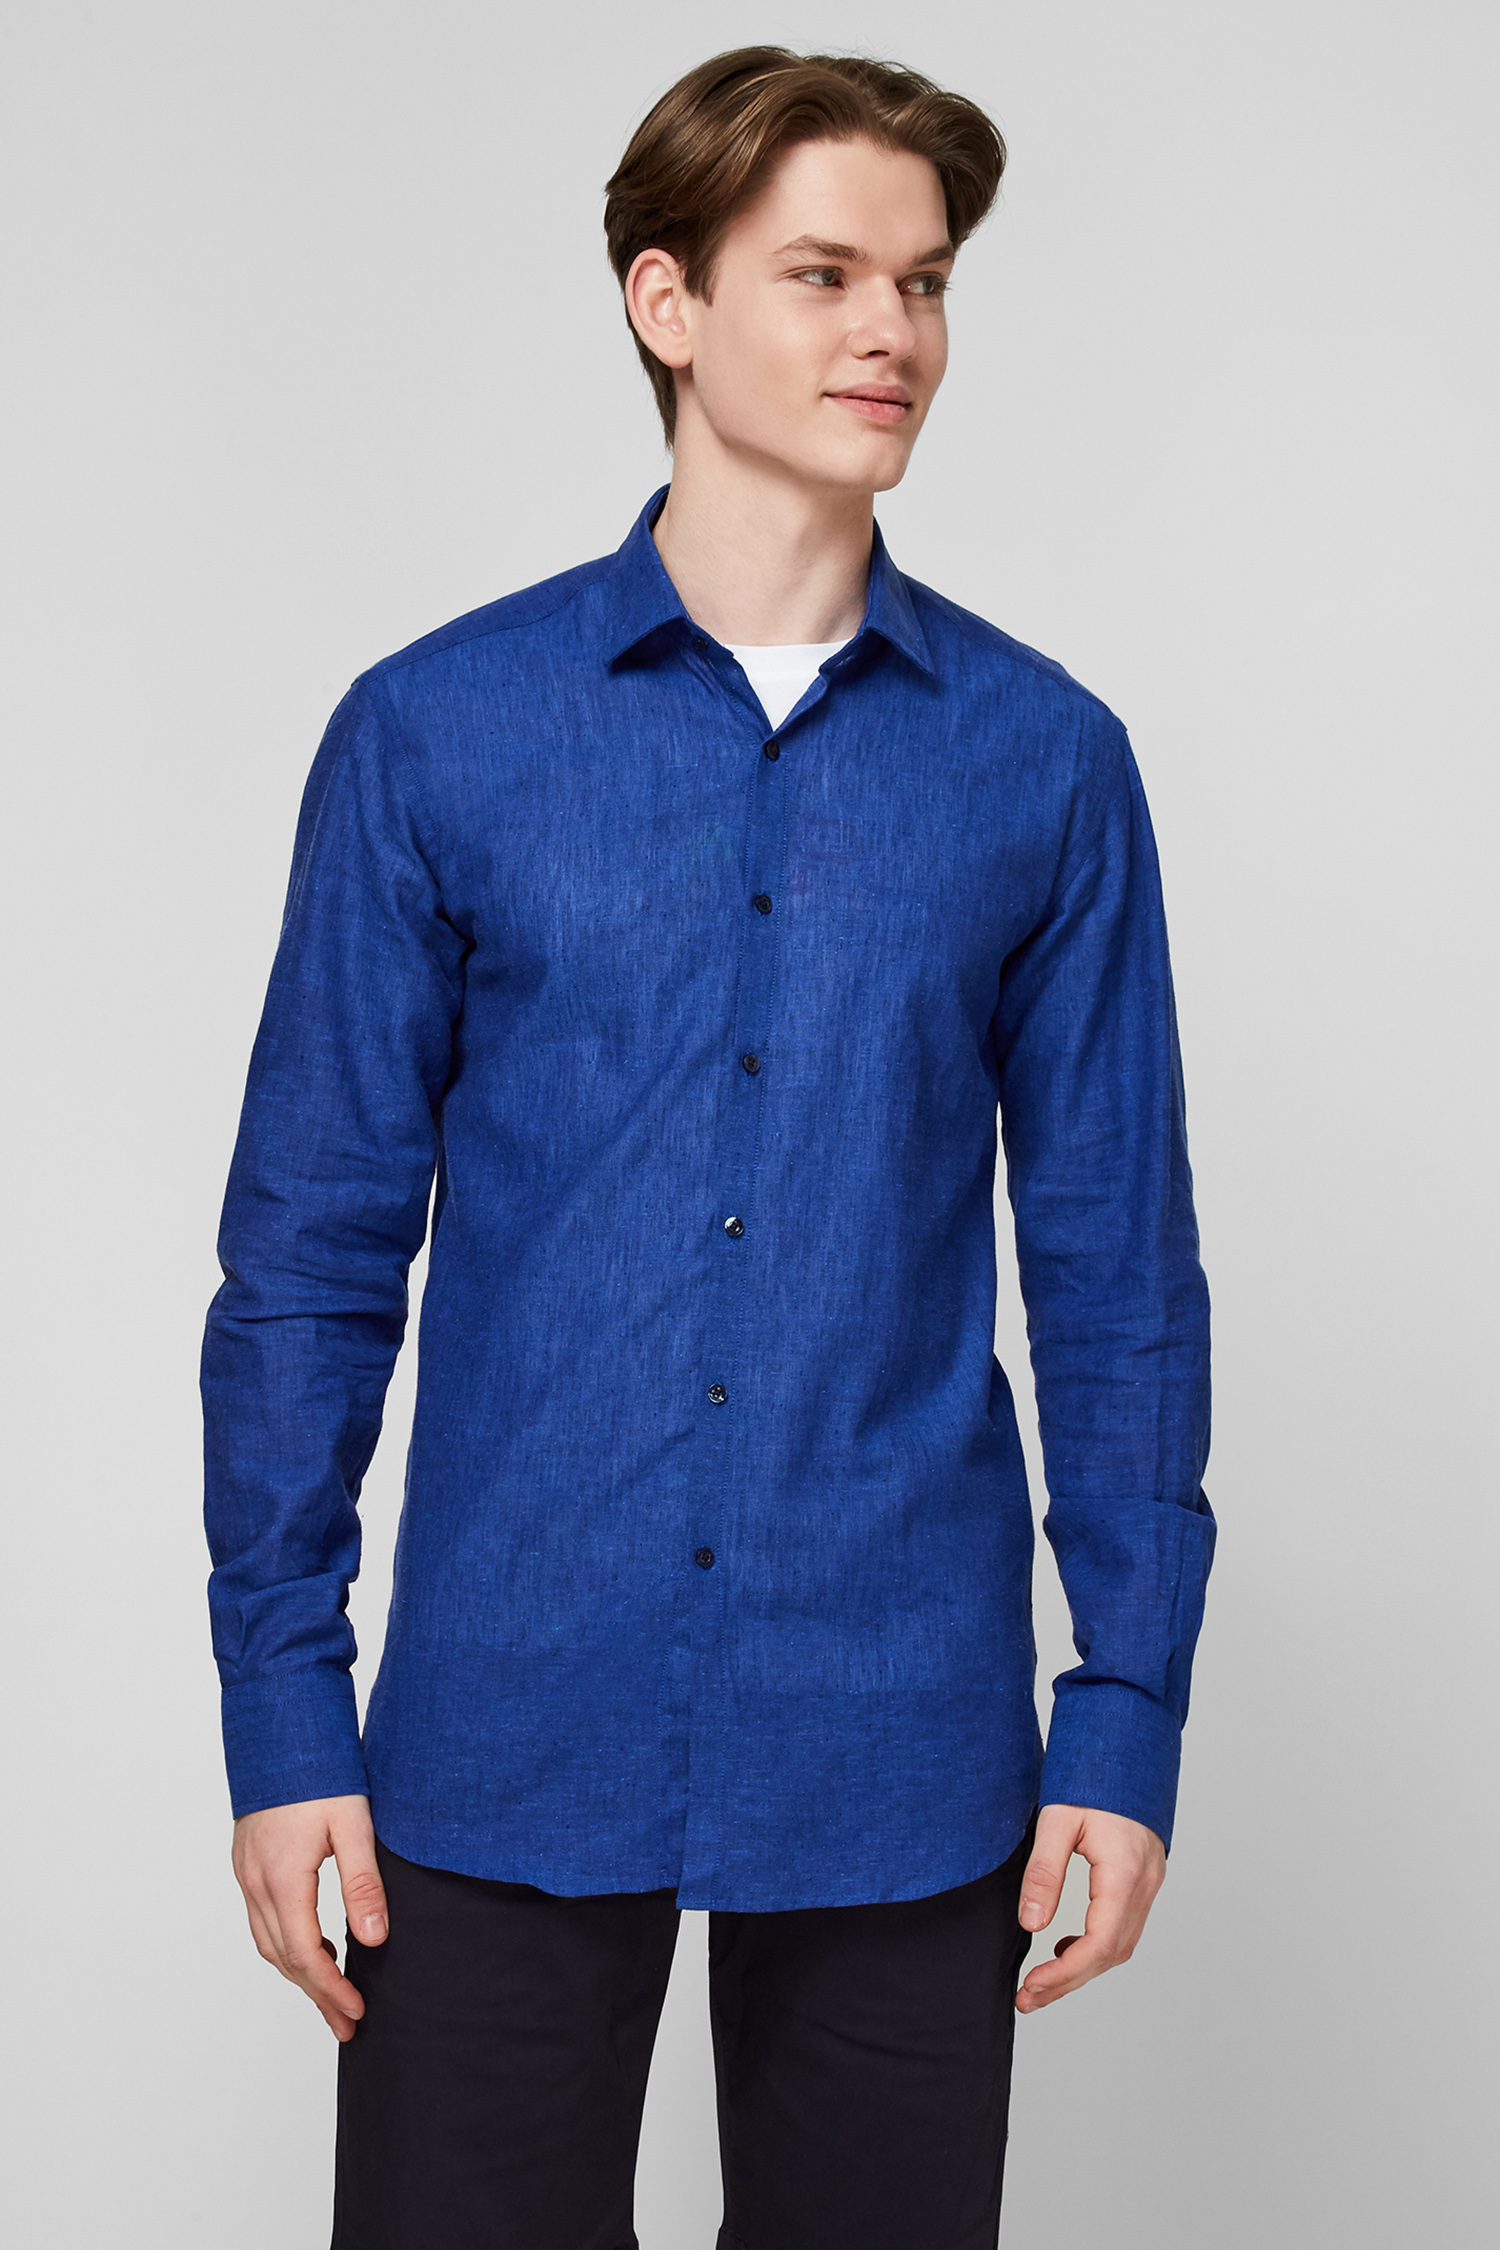 Синя лляна сорочка для хлопців Karl Lagerfeld 511628.605003;660